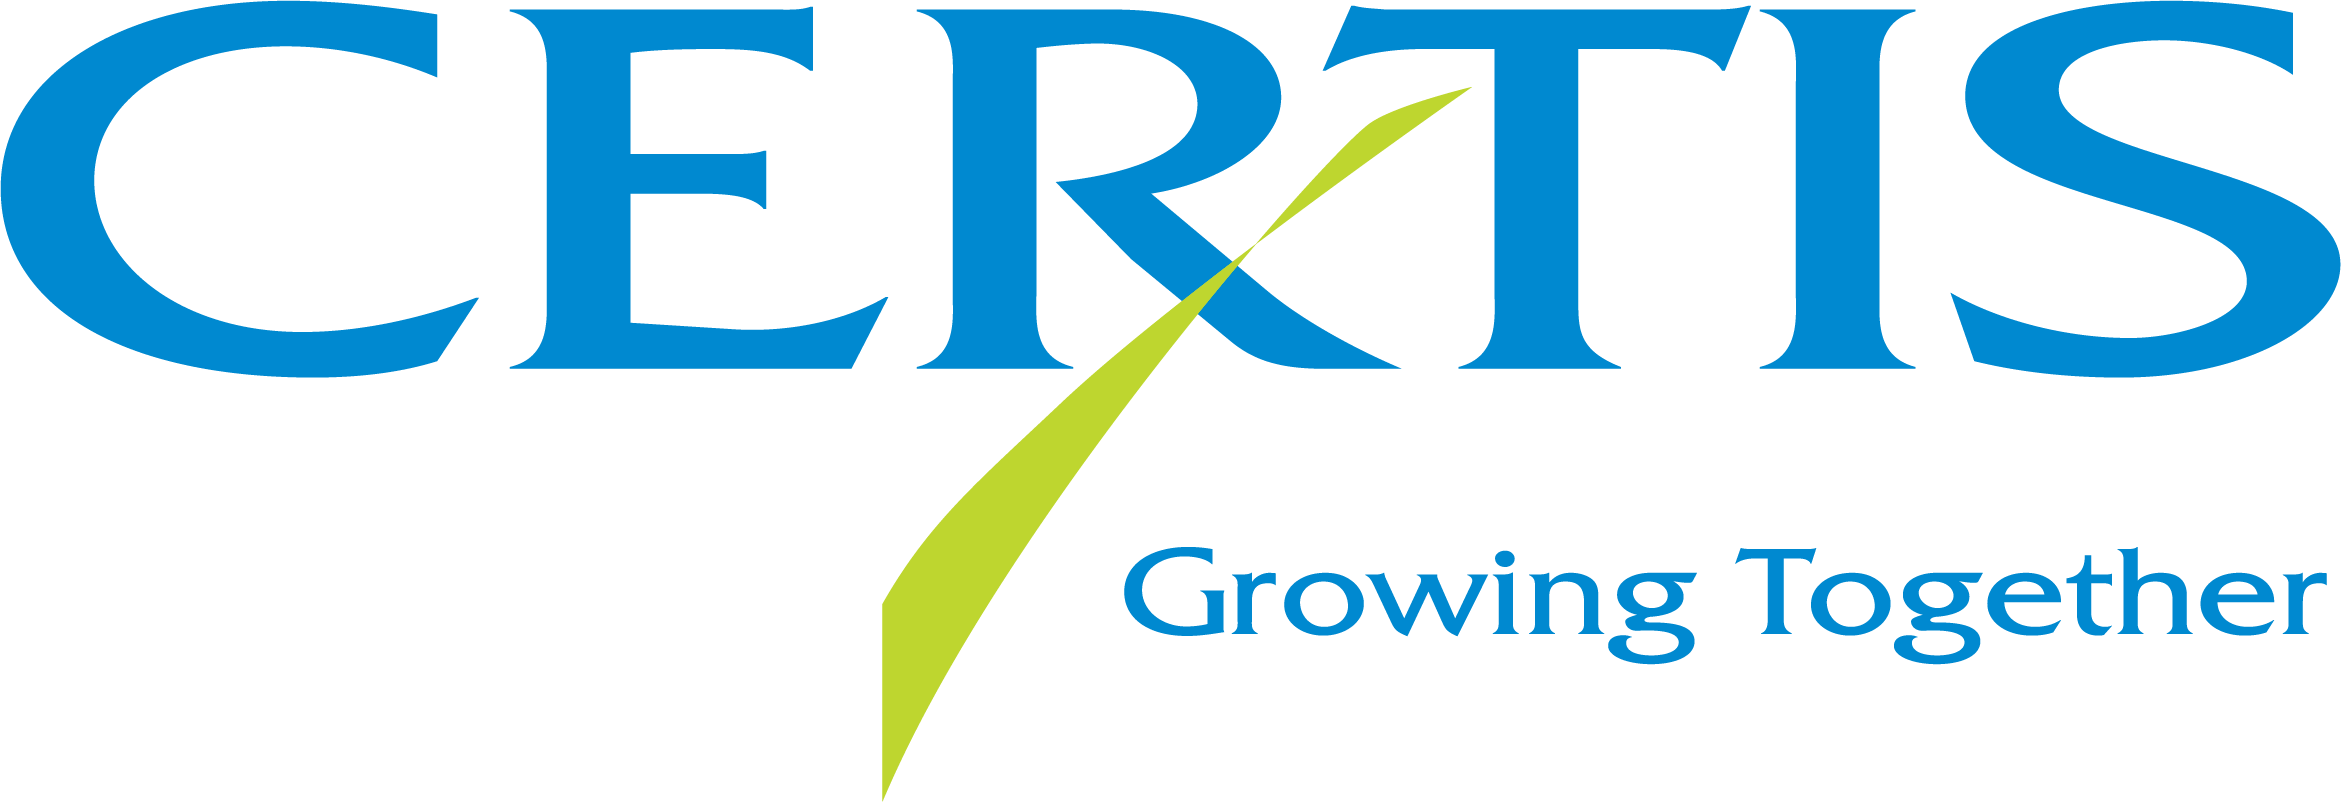 Logo de CERTIS